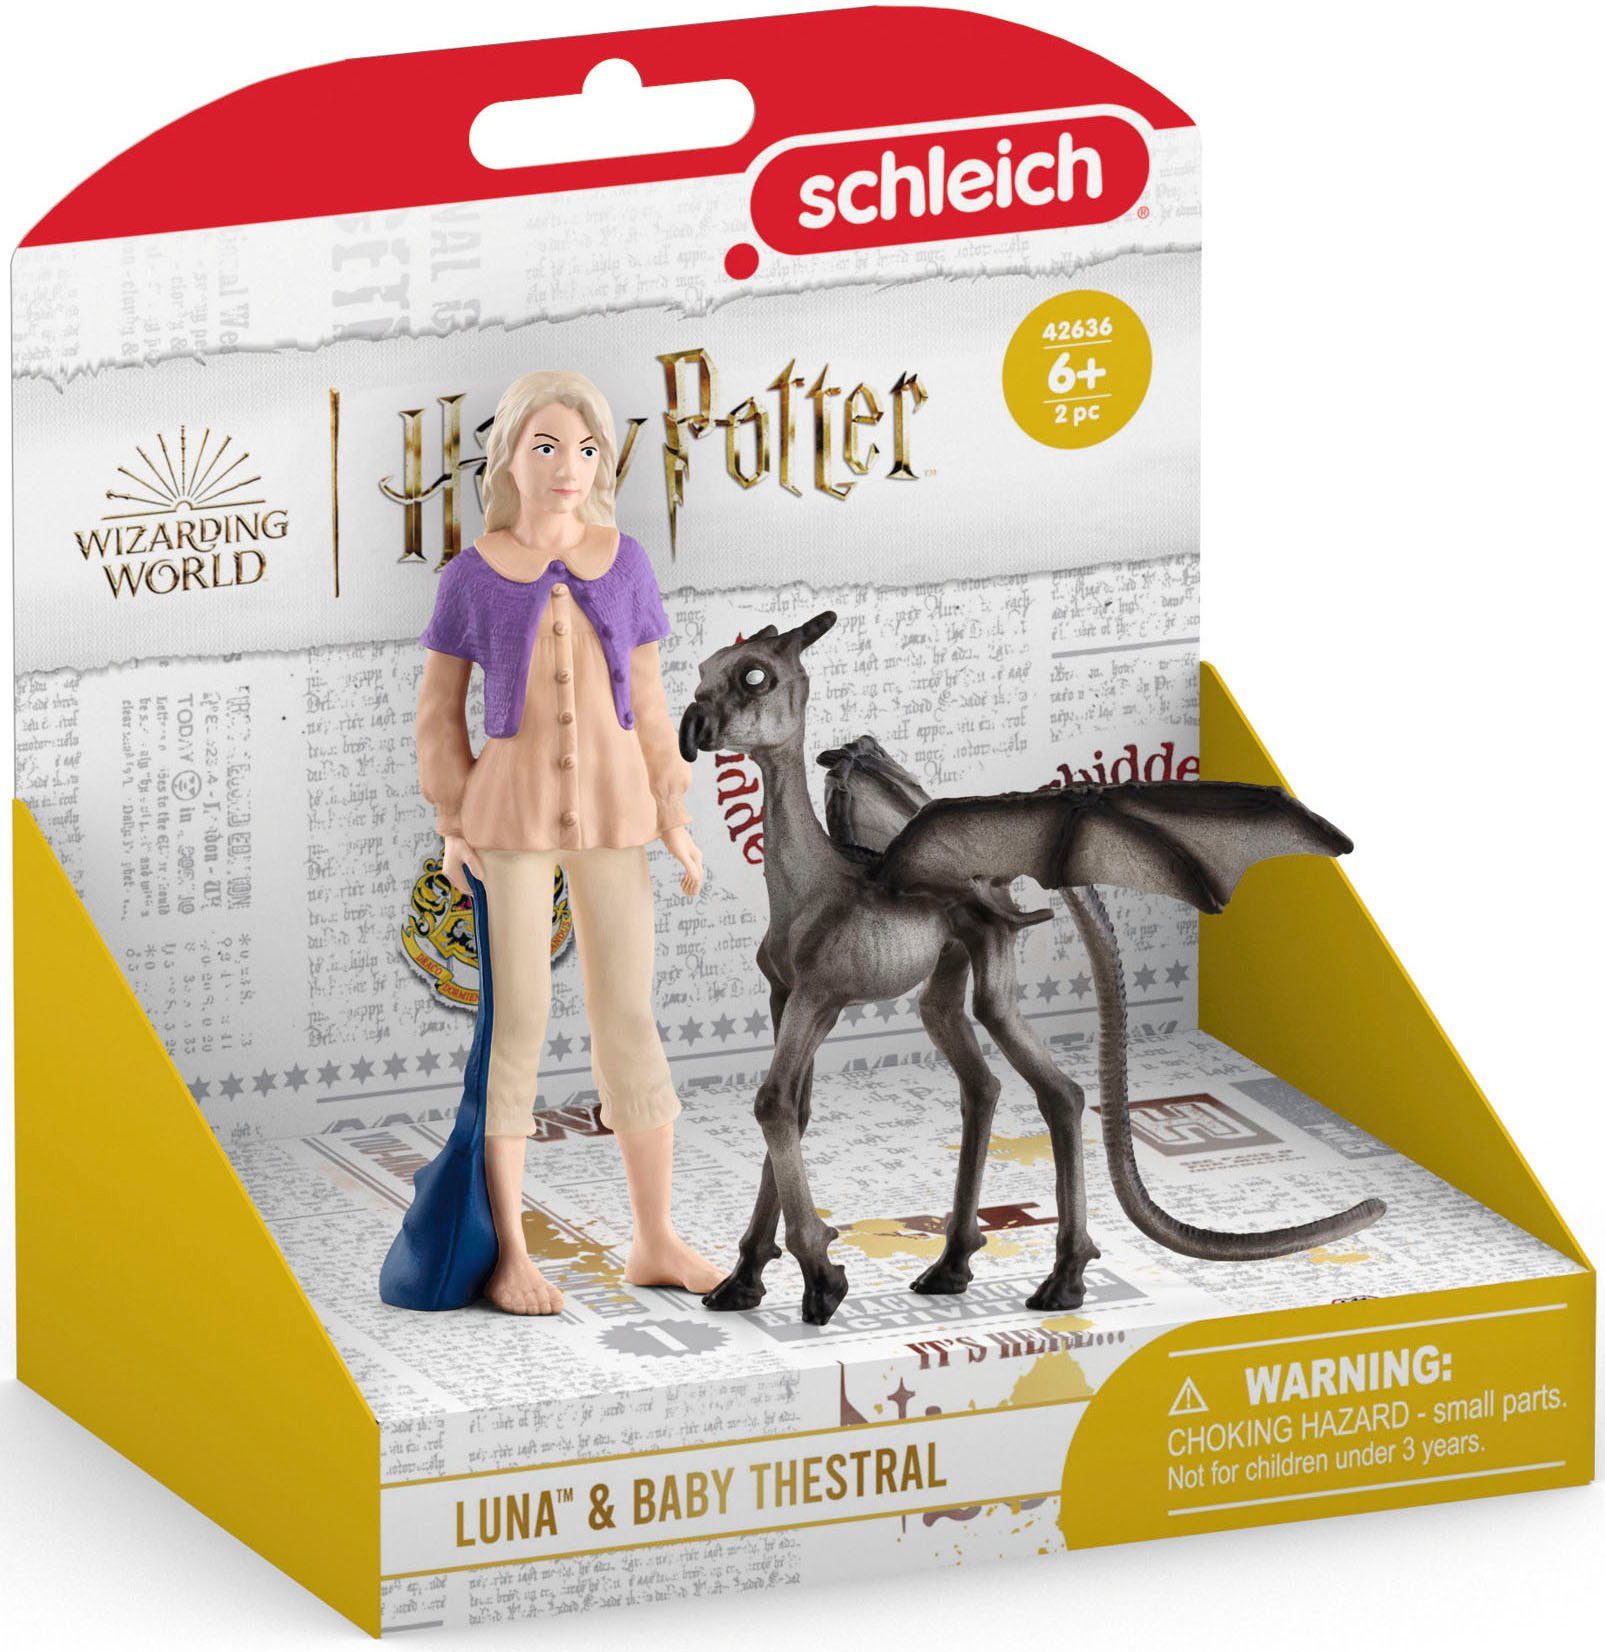 Schleich® Spielfigur WIZARDING WORLD, Europe & (42636), Made in Thestral Luna™ Harry Potter™